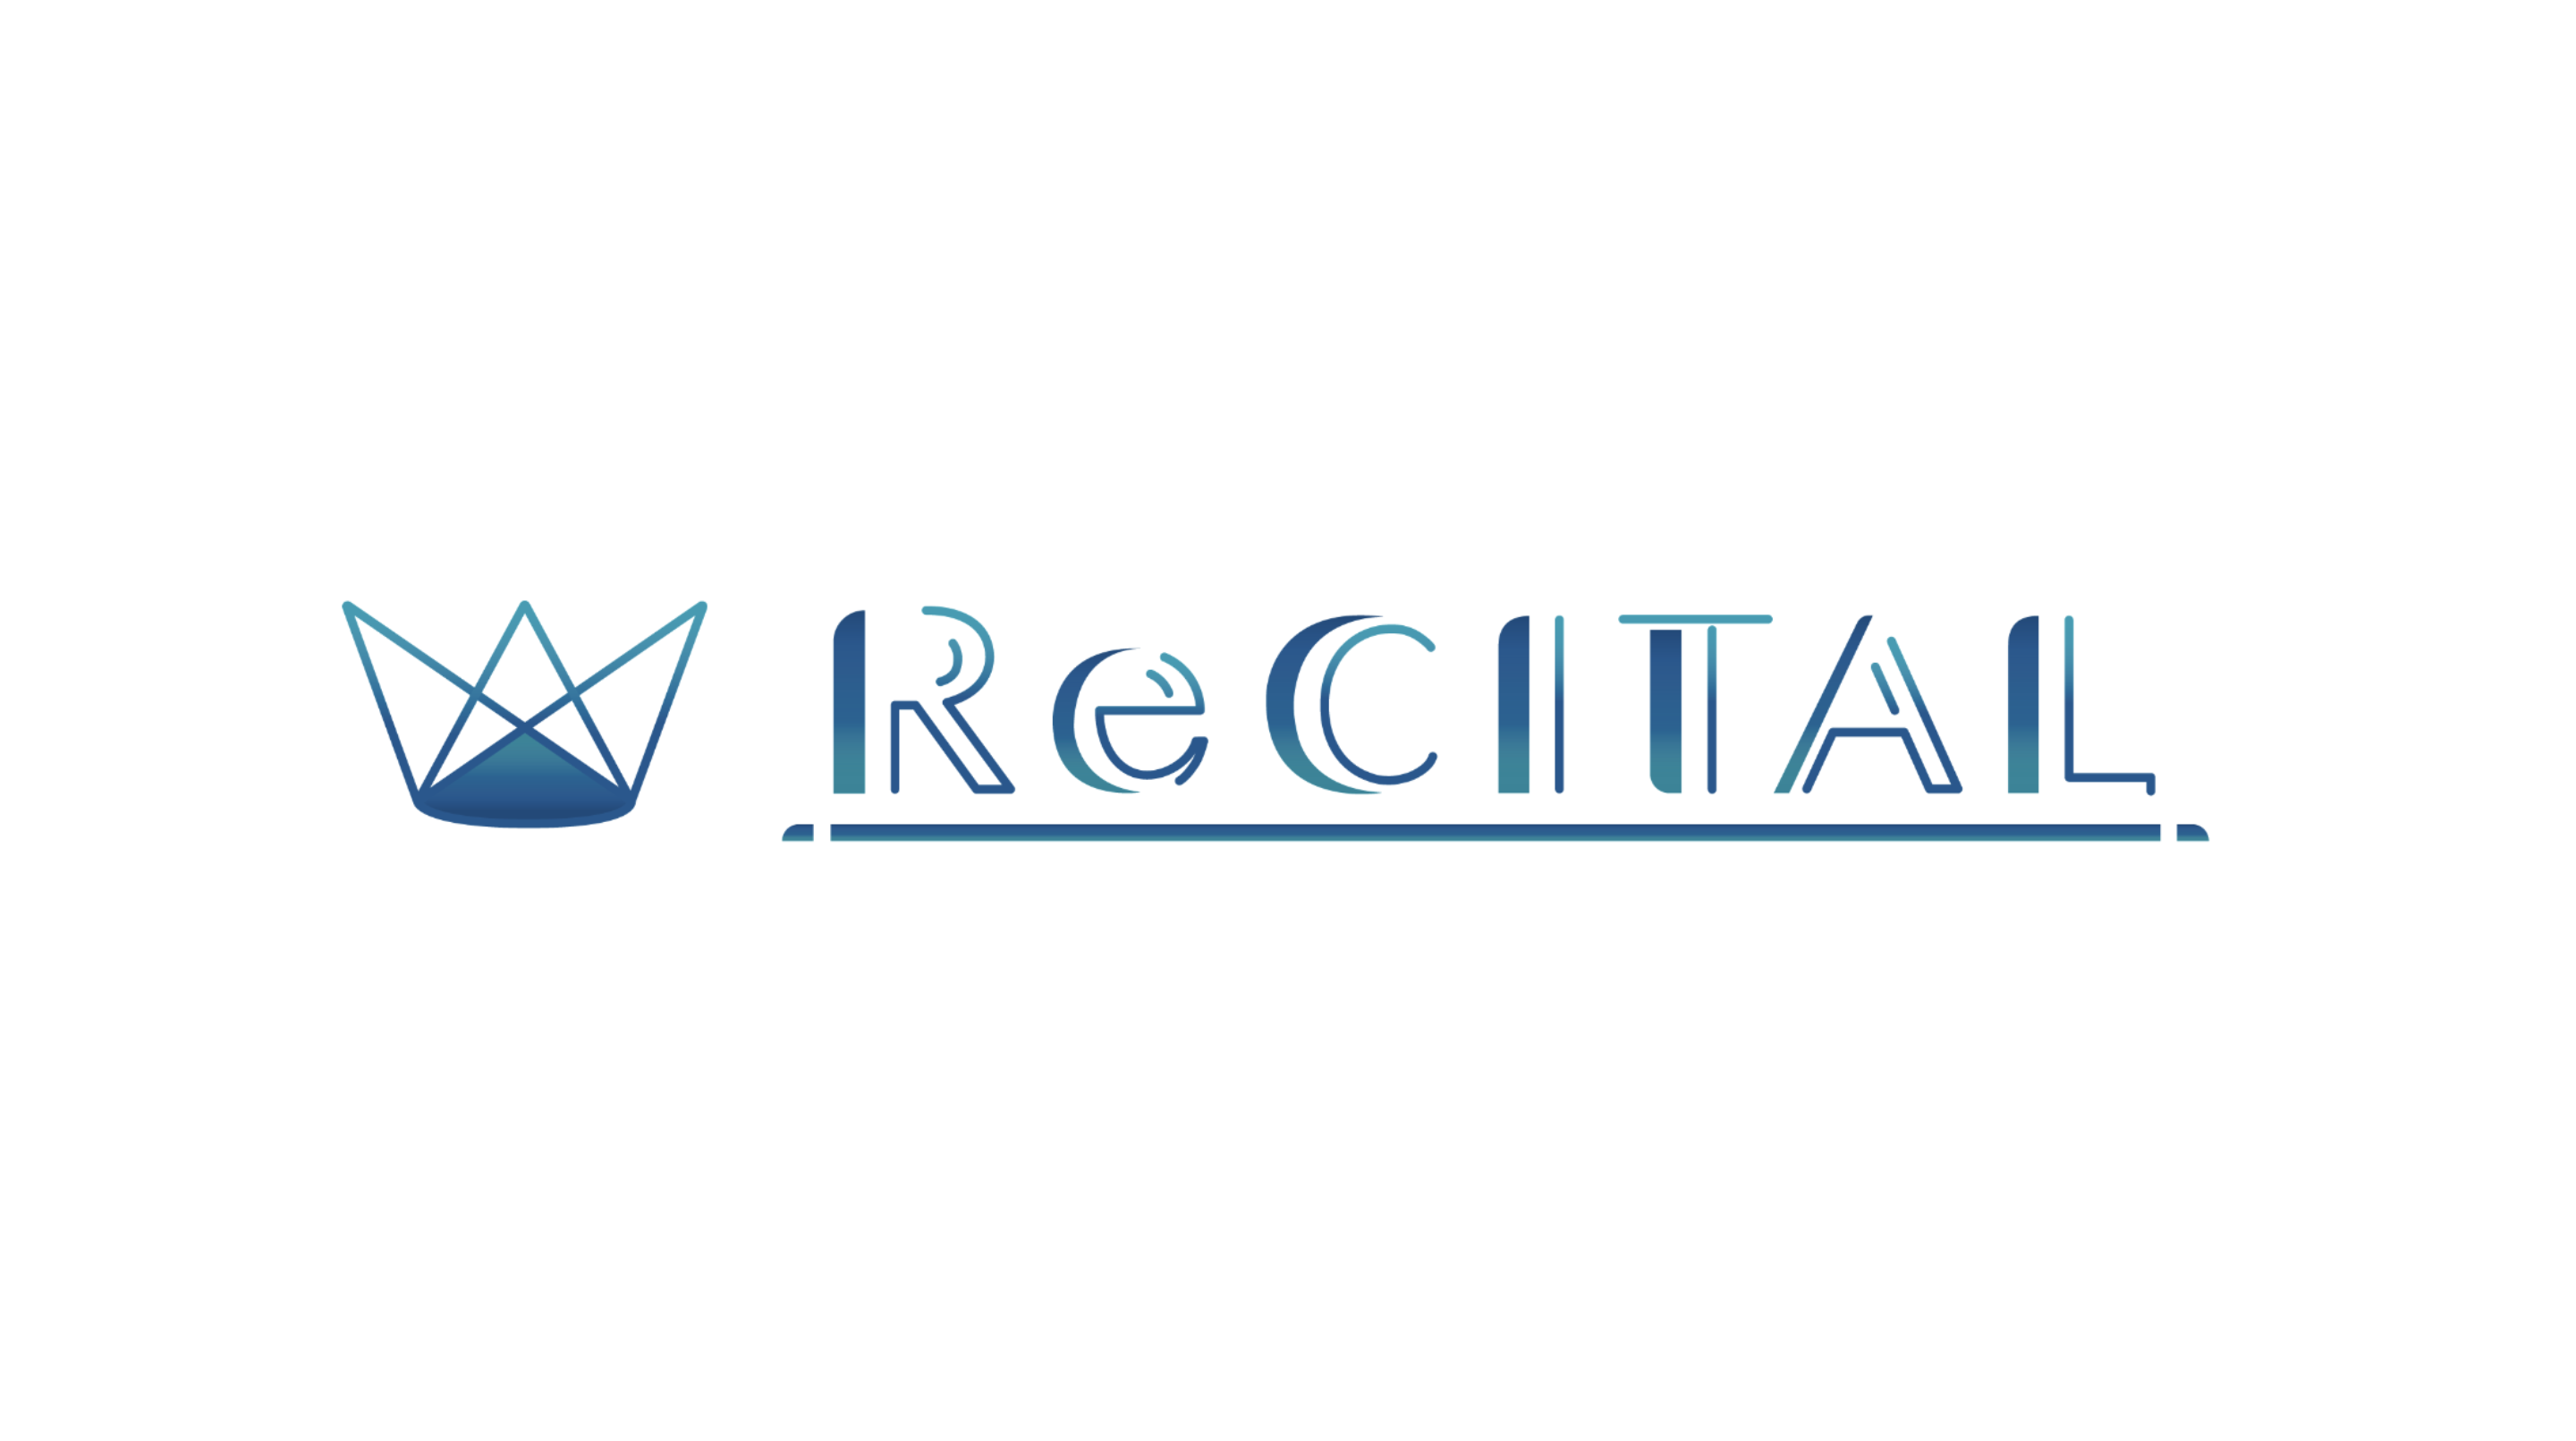 ライブ配信プロダクション事業を展開する「ReCITAL株式会社」を設立